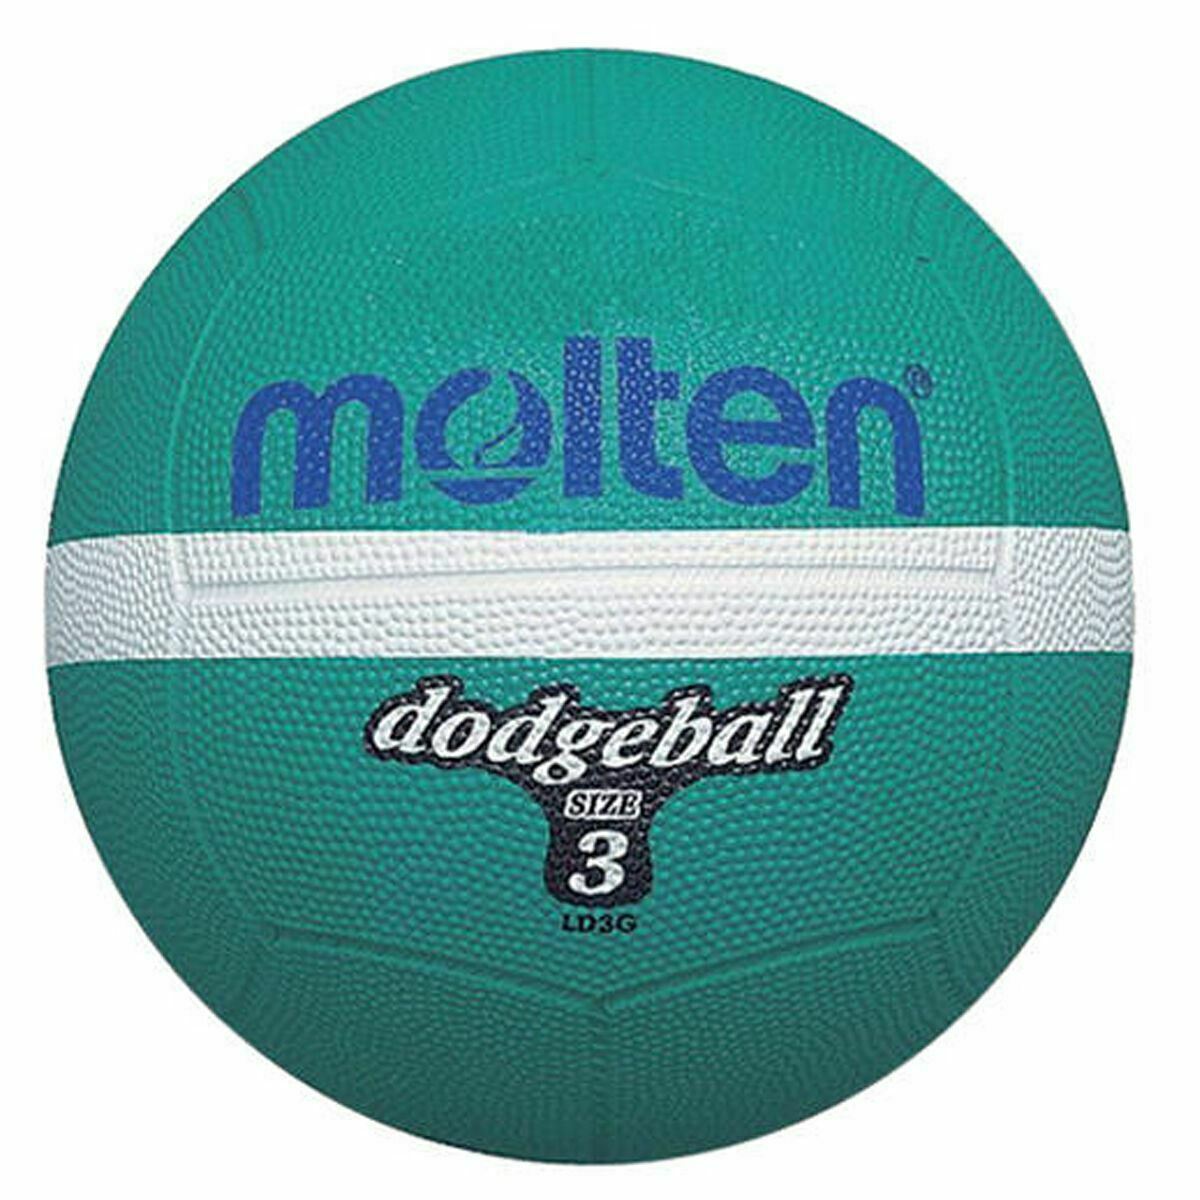 Balón Dodgeball Molten Ld3g - verde-menta - 